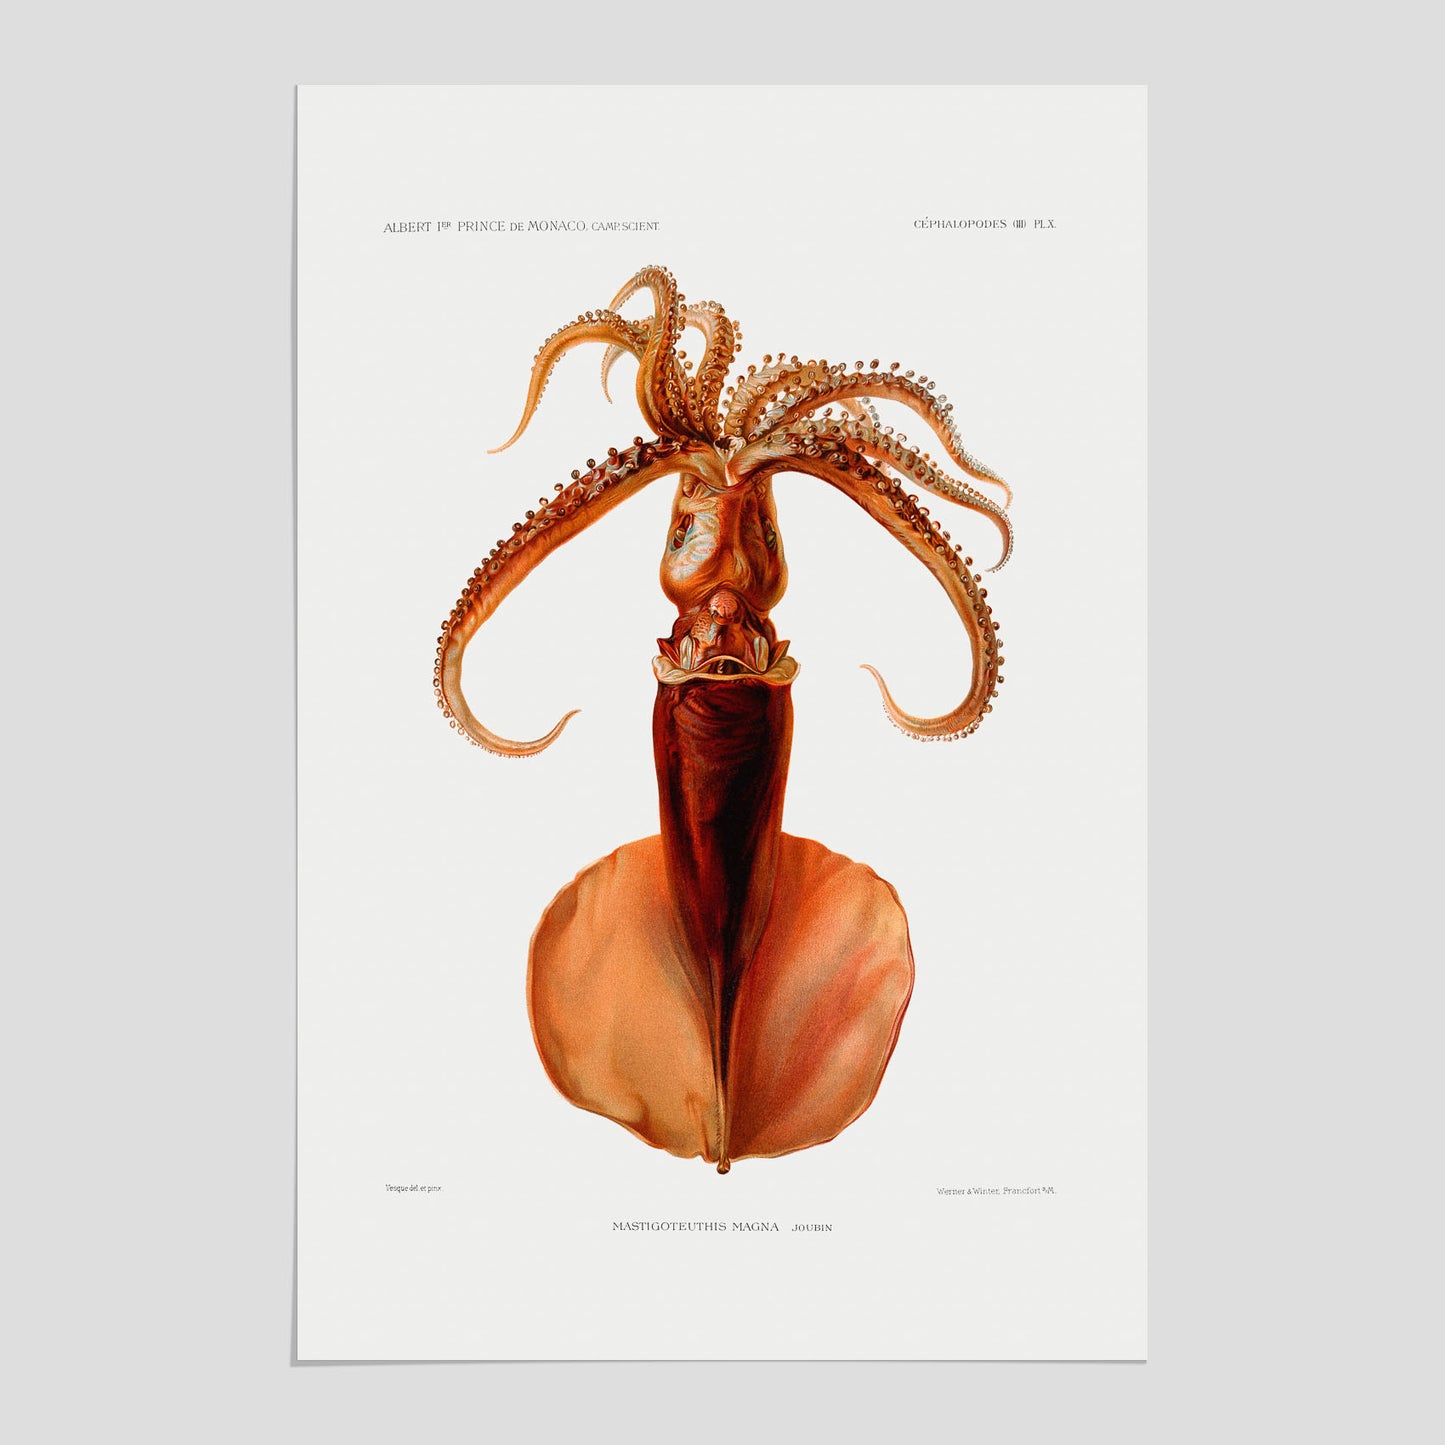 En vintageposter med en illustration av en bläckfisk från boken "Résultats des campagnes scientifiques du prince de Monaco"